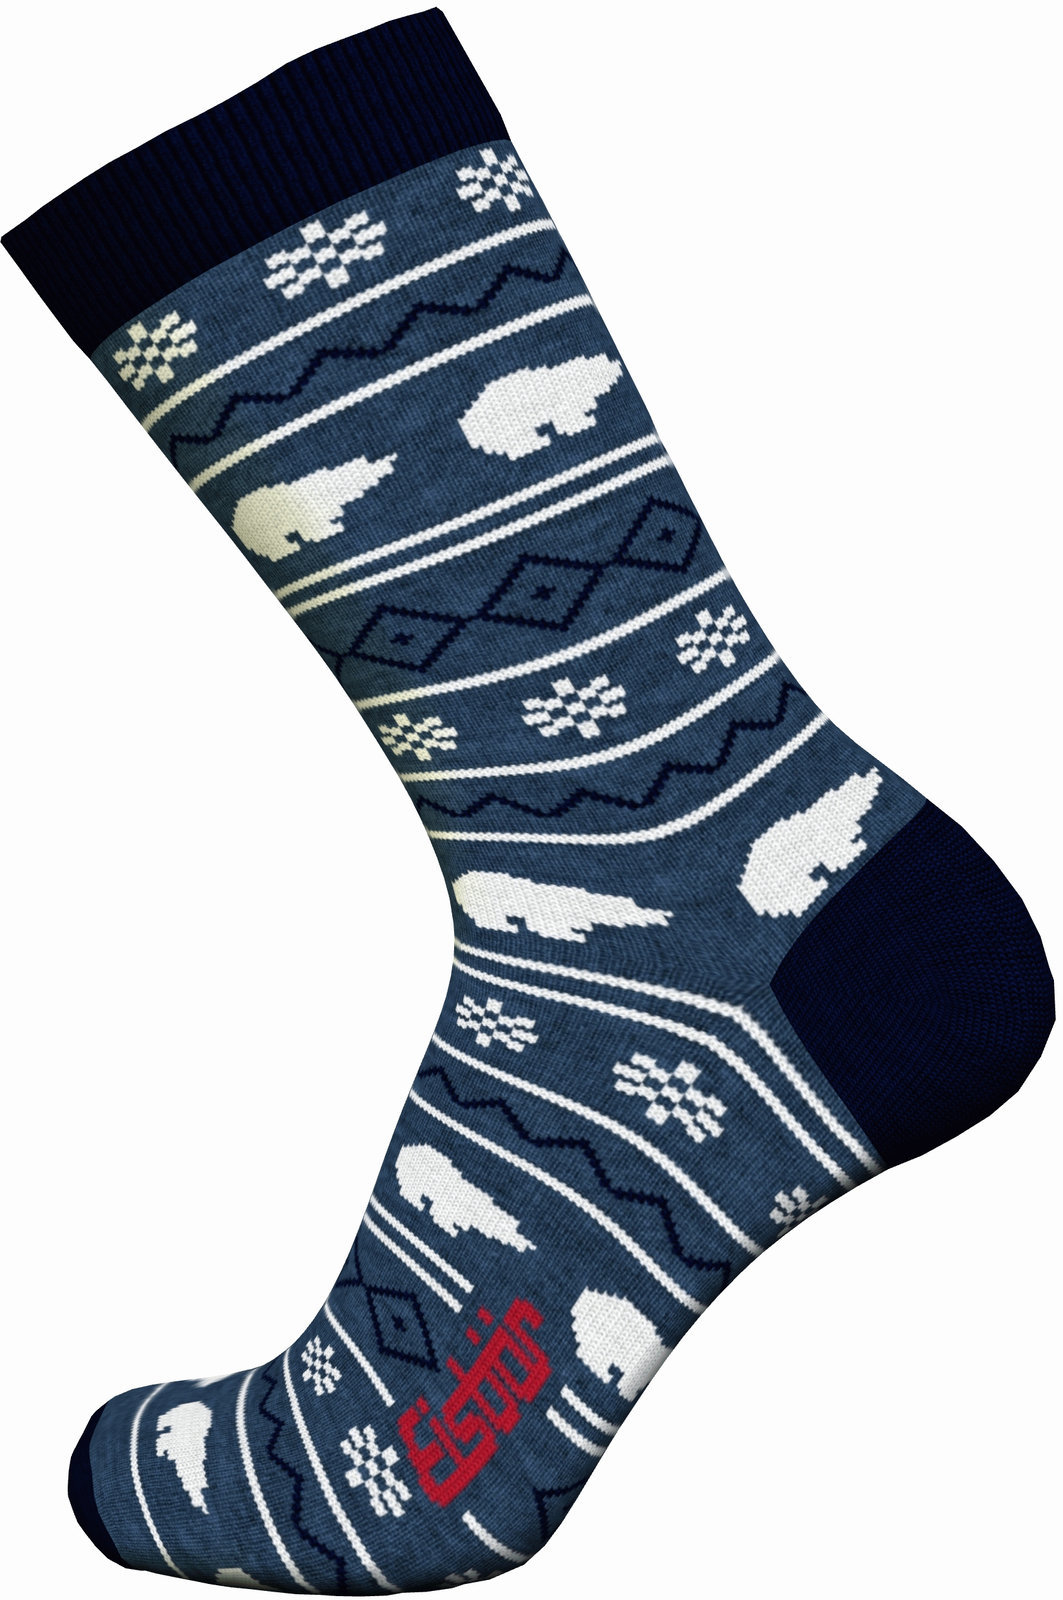 Lyžiarske ponožky Eisbär Lifestyle Jacquard Avio/Navy-Grey/White 43-45 Lyžiarske ponožky